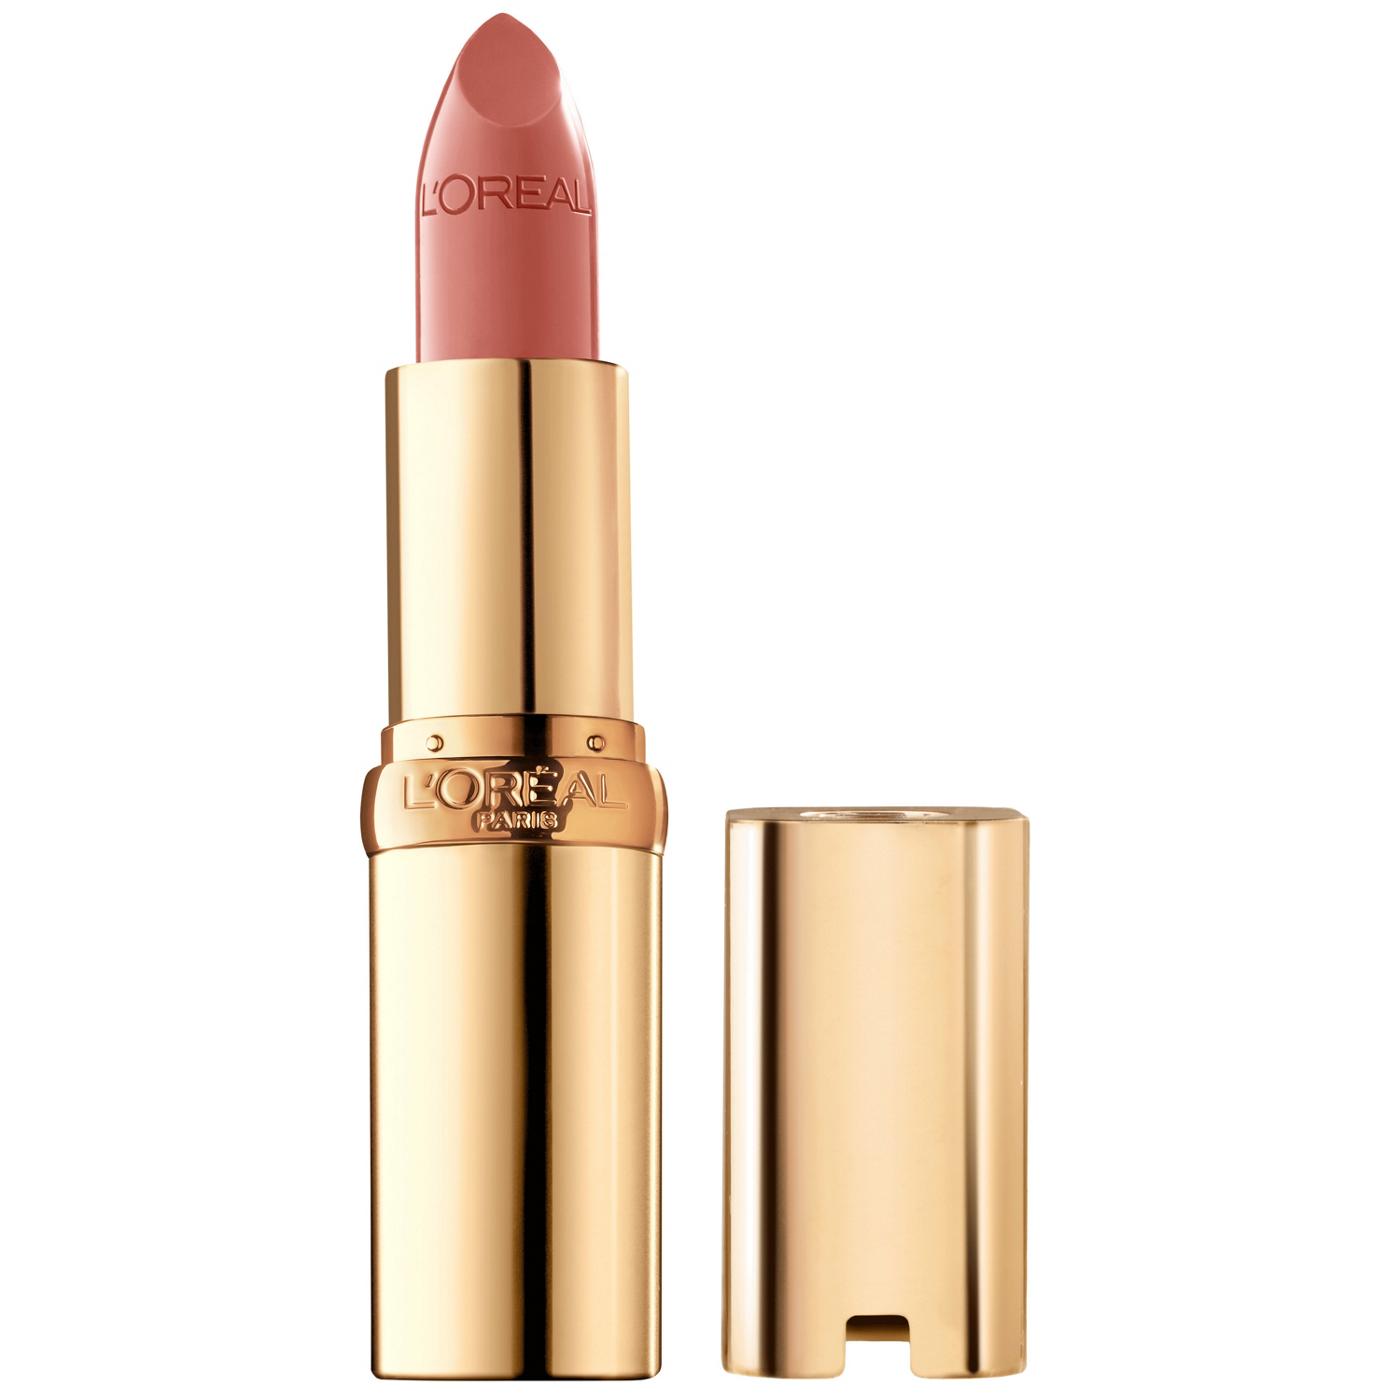 L'Oréal Paris Colour Riche Original Satin Lipstick - Toasted Almond; image 1 of 5